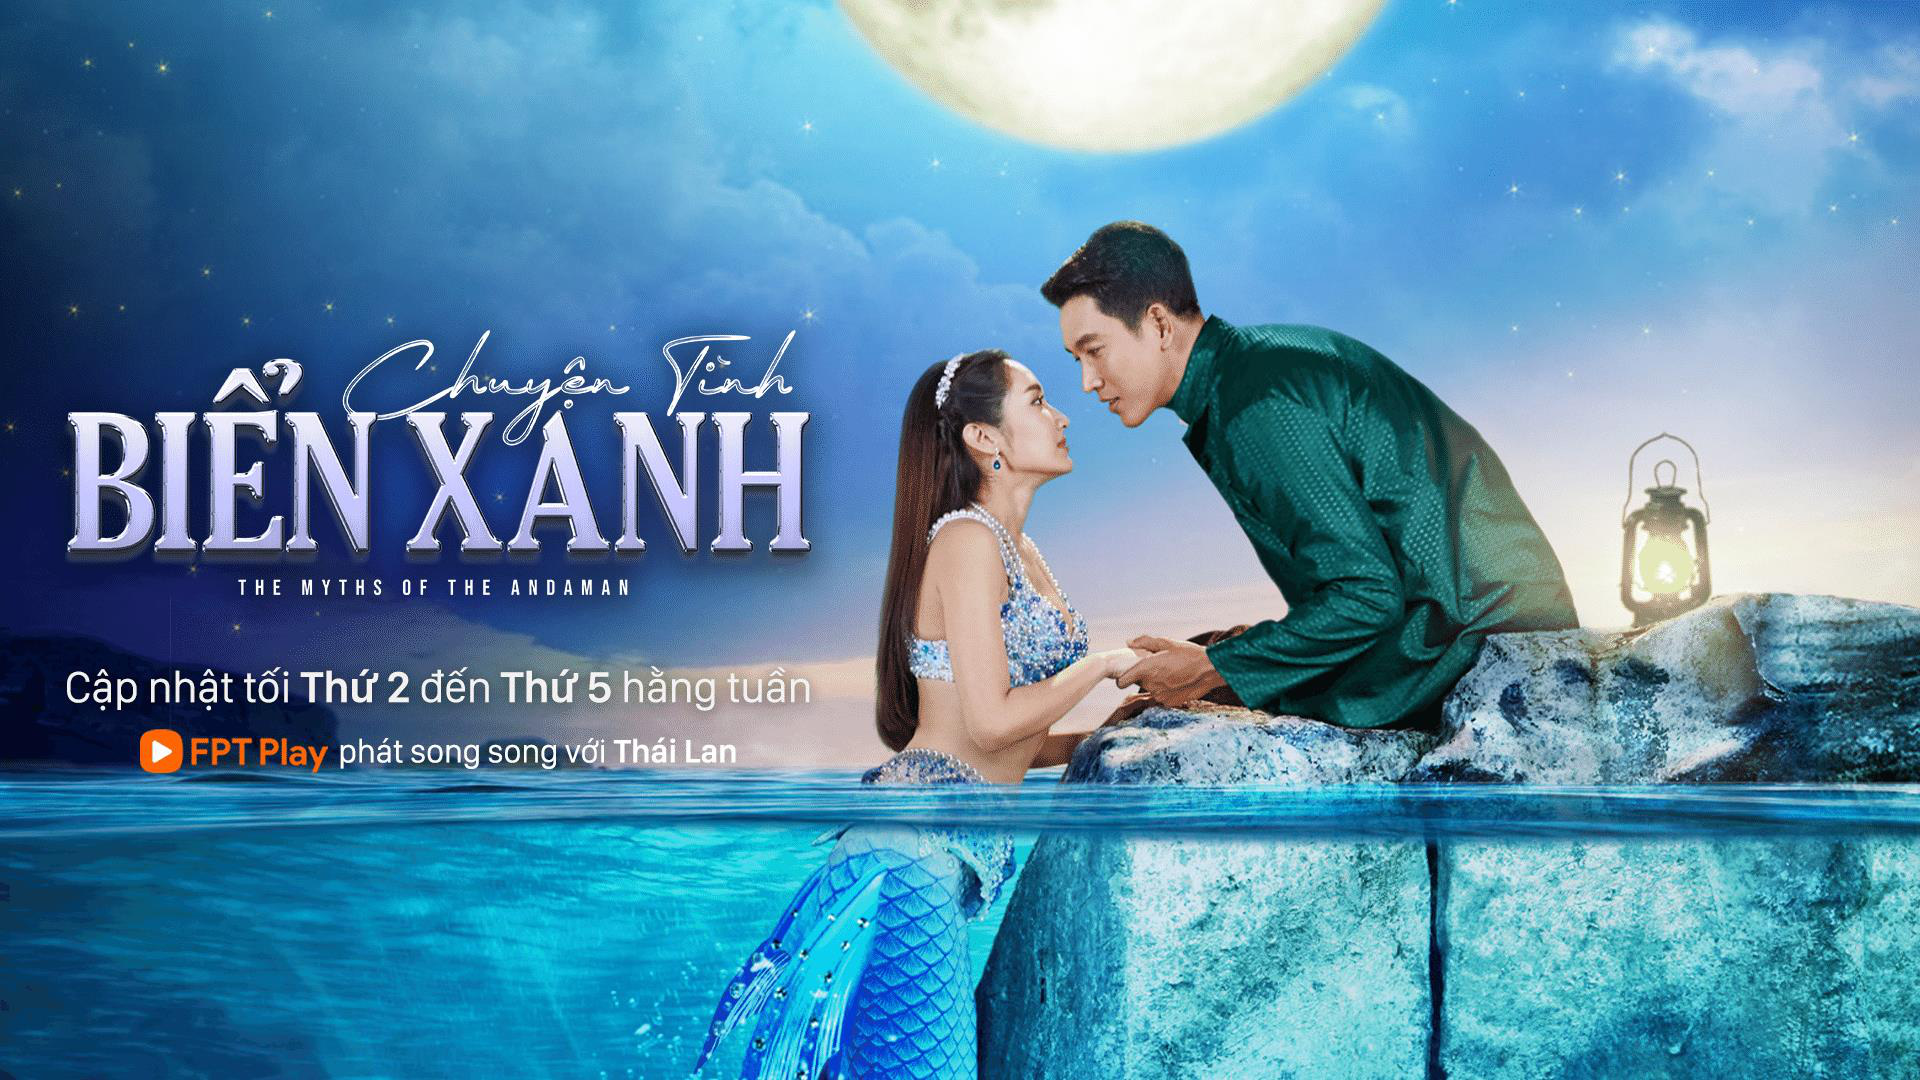 Mỹ nhân Thái đọ sắc trên FPT Play: Sơn nữ Yui Chiranan mặn mà, át vía cả nàng tiên cá Jean Gaewalin - Ảnh 4.